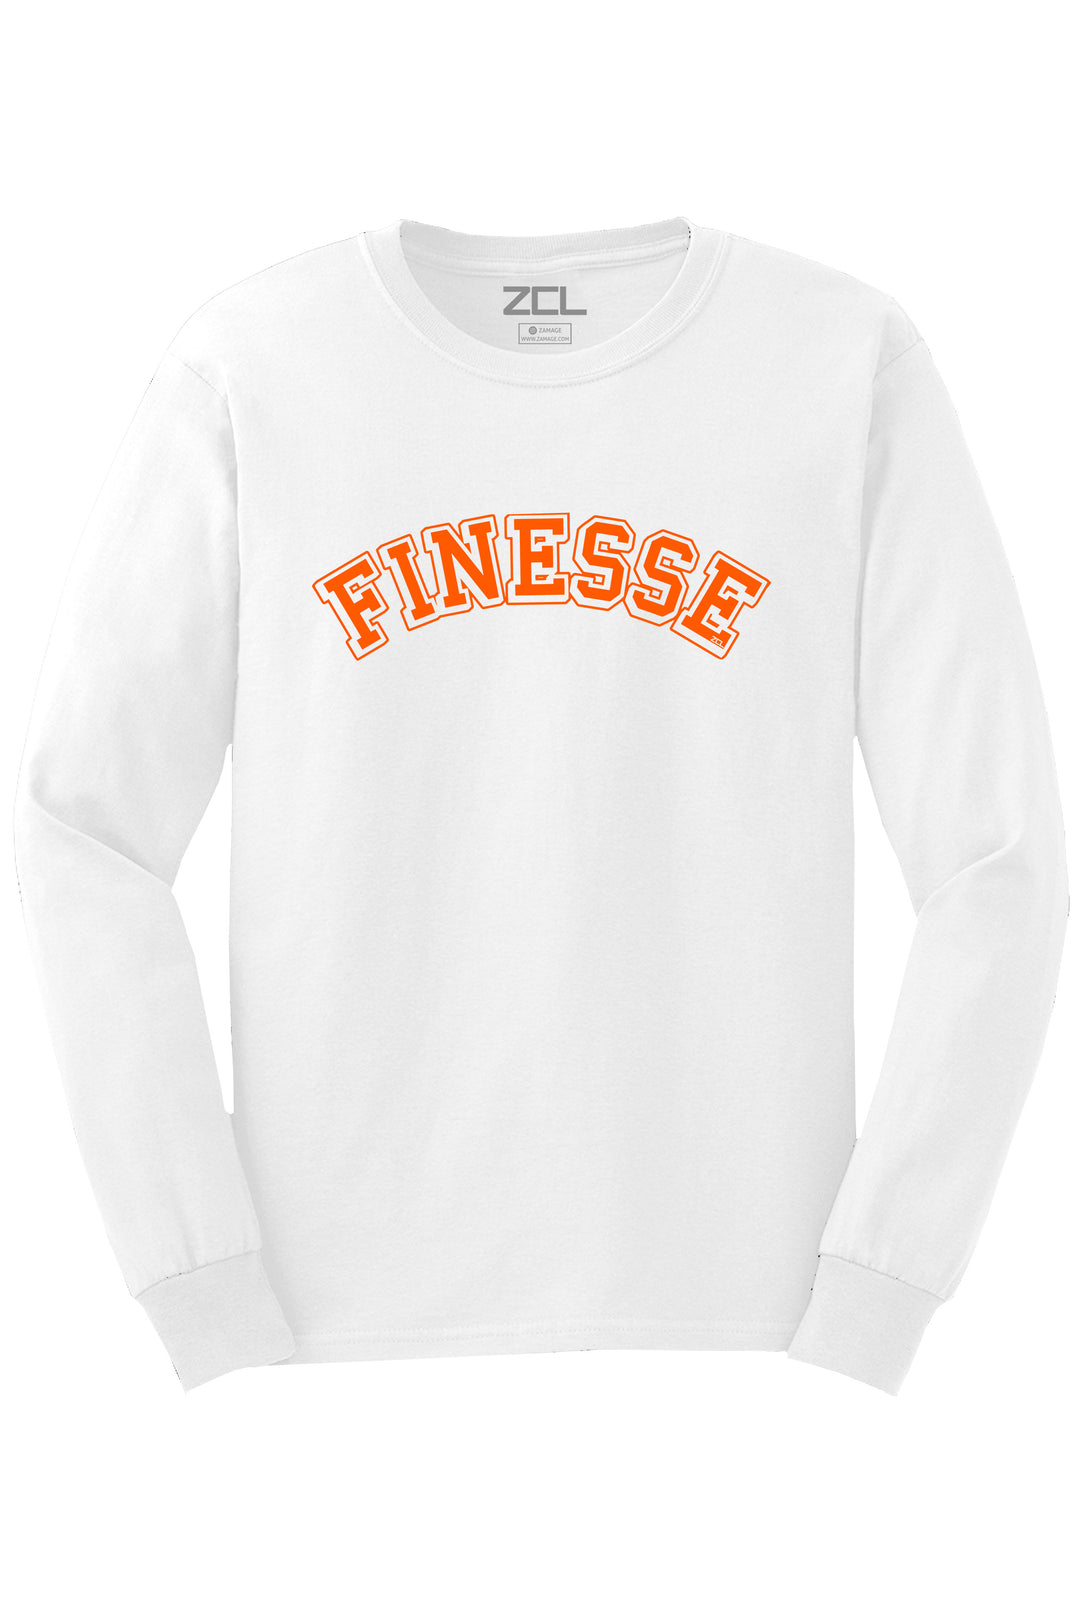 Finesse Long Sleeve Tee (Orange Logo) - Zamage